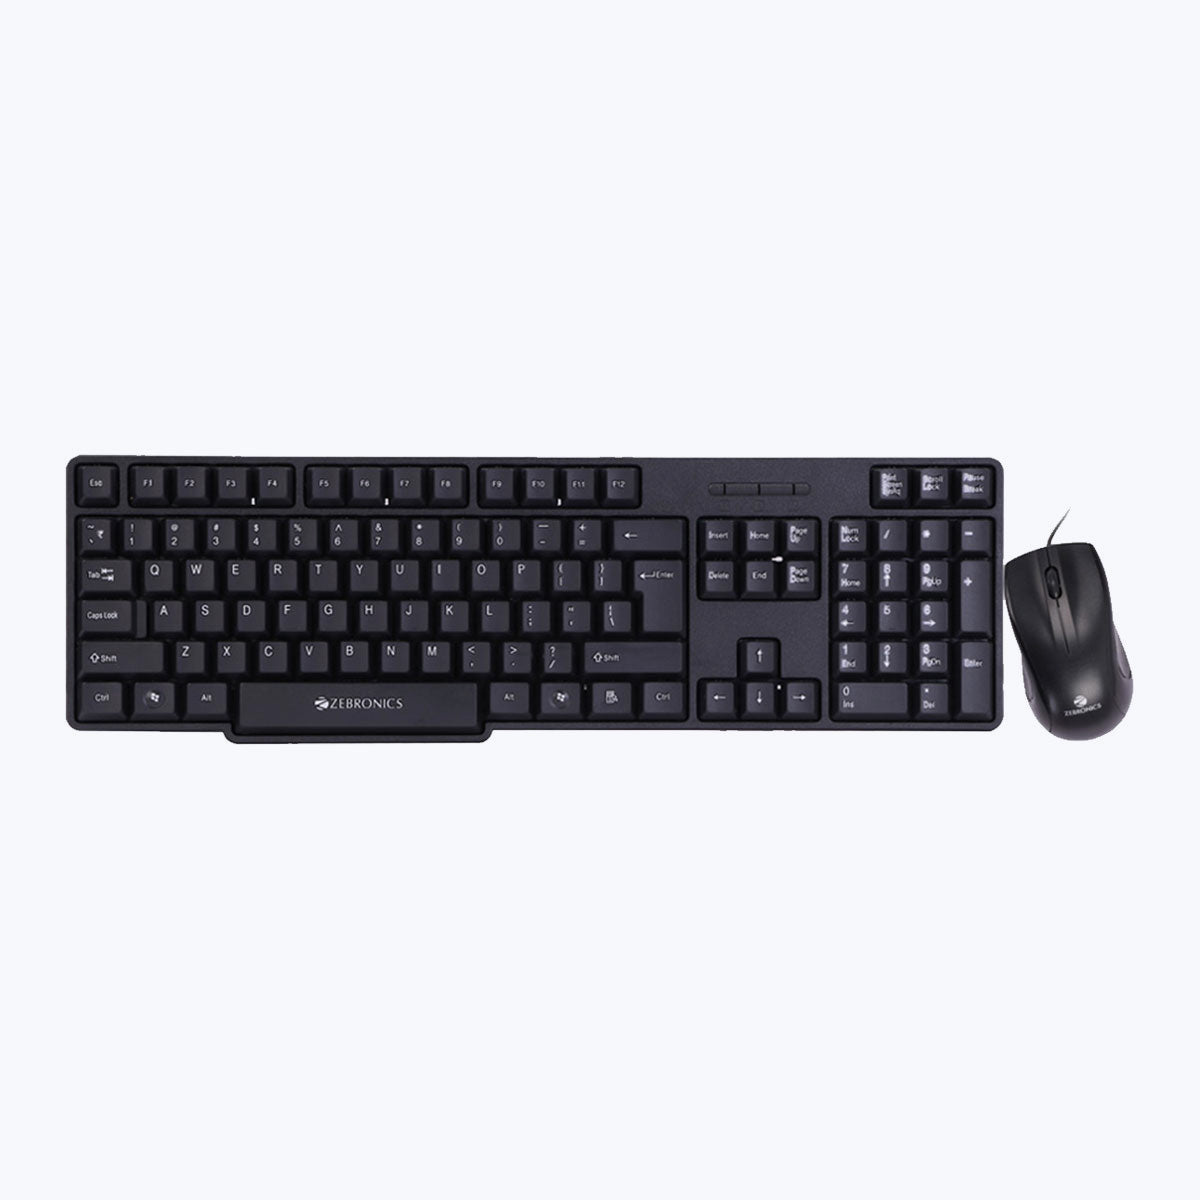 Zeb-Judwaa 750 - Keyboard and Mouse Combo - Zebronics